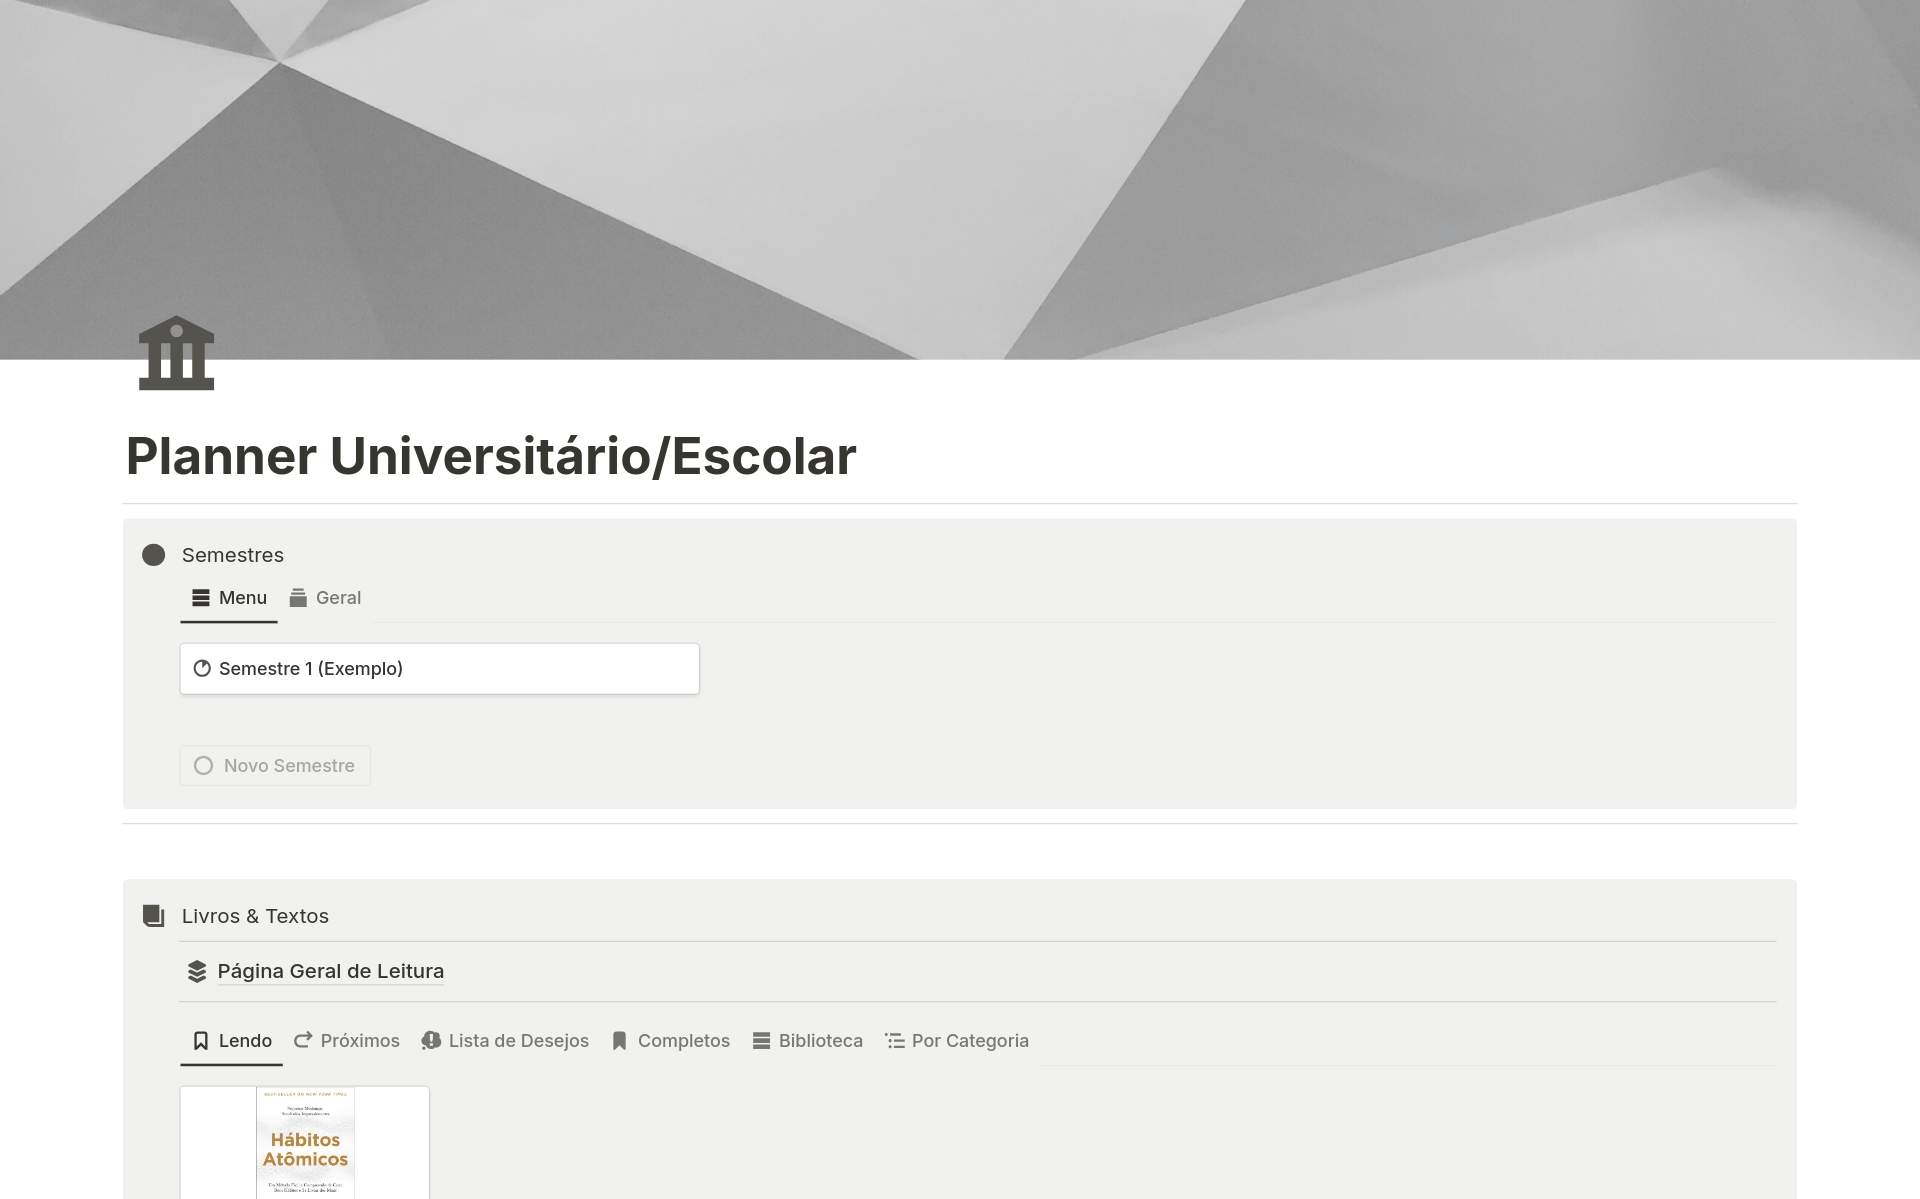 Eine Vorlagenvorschau für Planner Universitário/Escolar